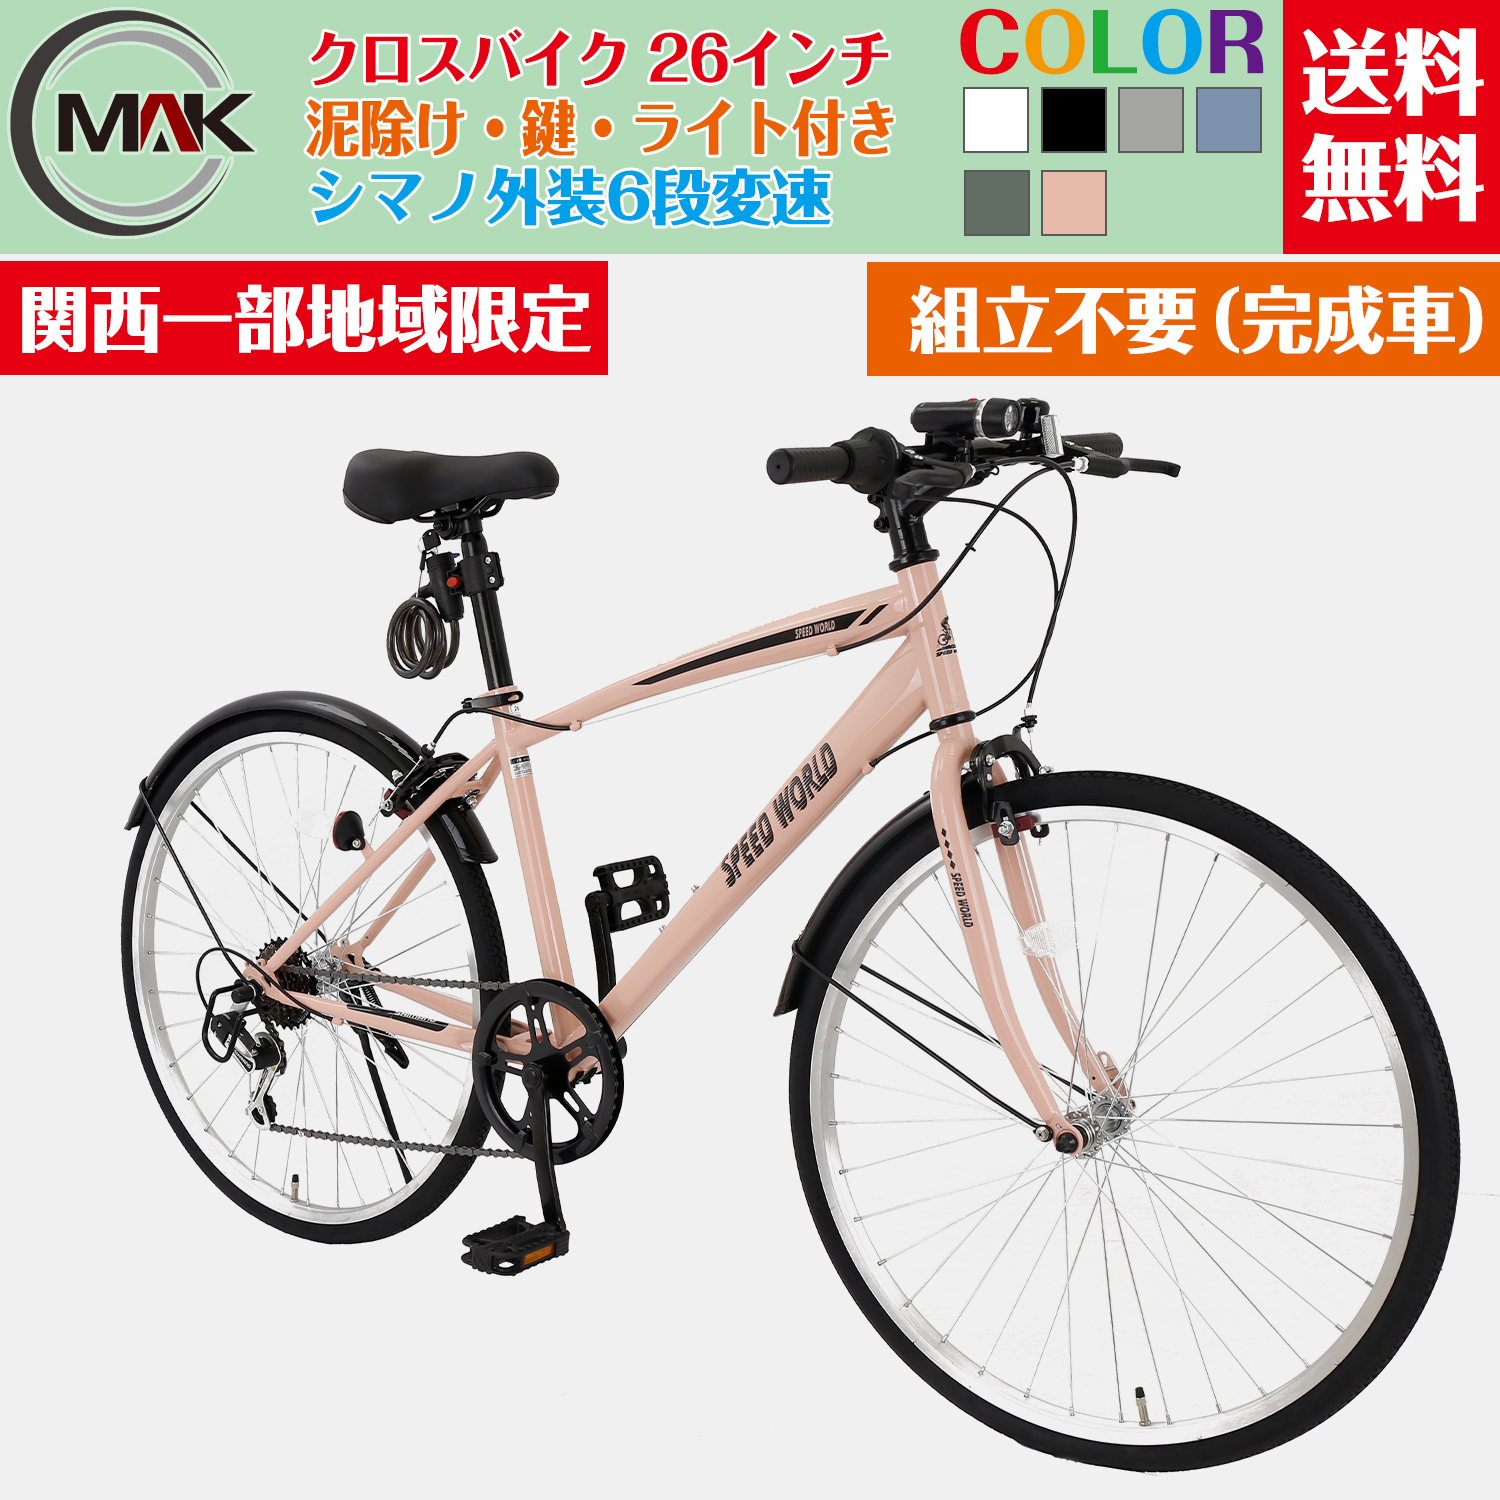 【楽天市場】【31日までポイント5倍実施中】自転車 クロスバイク 